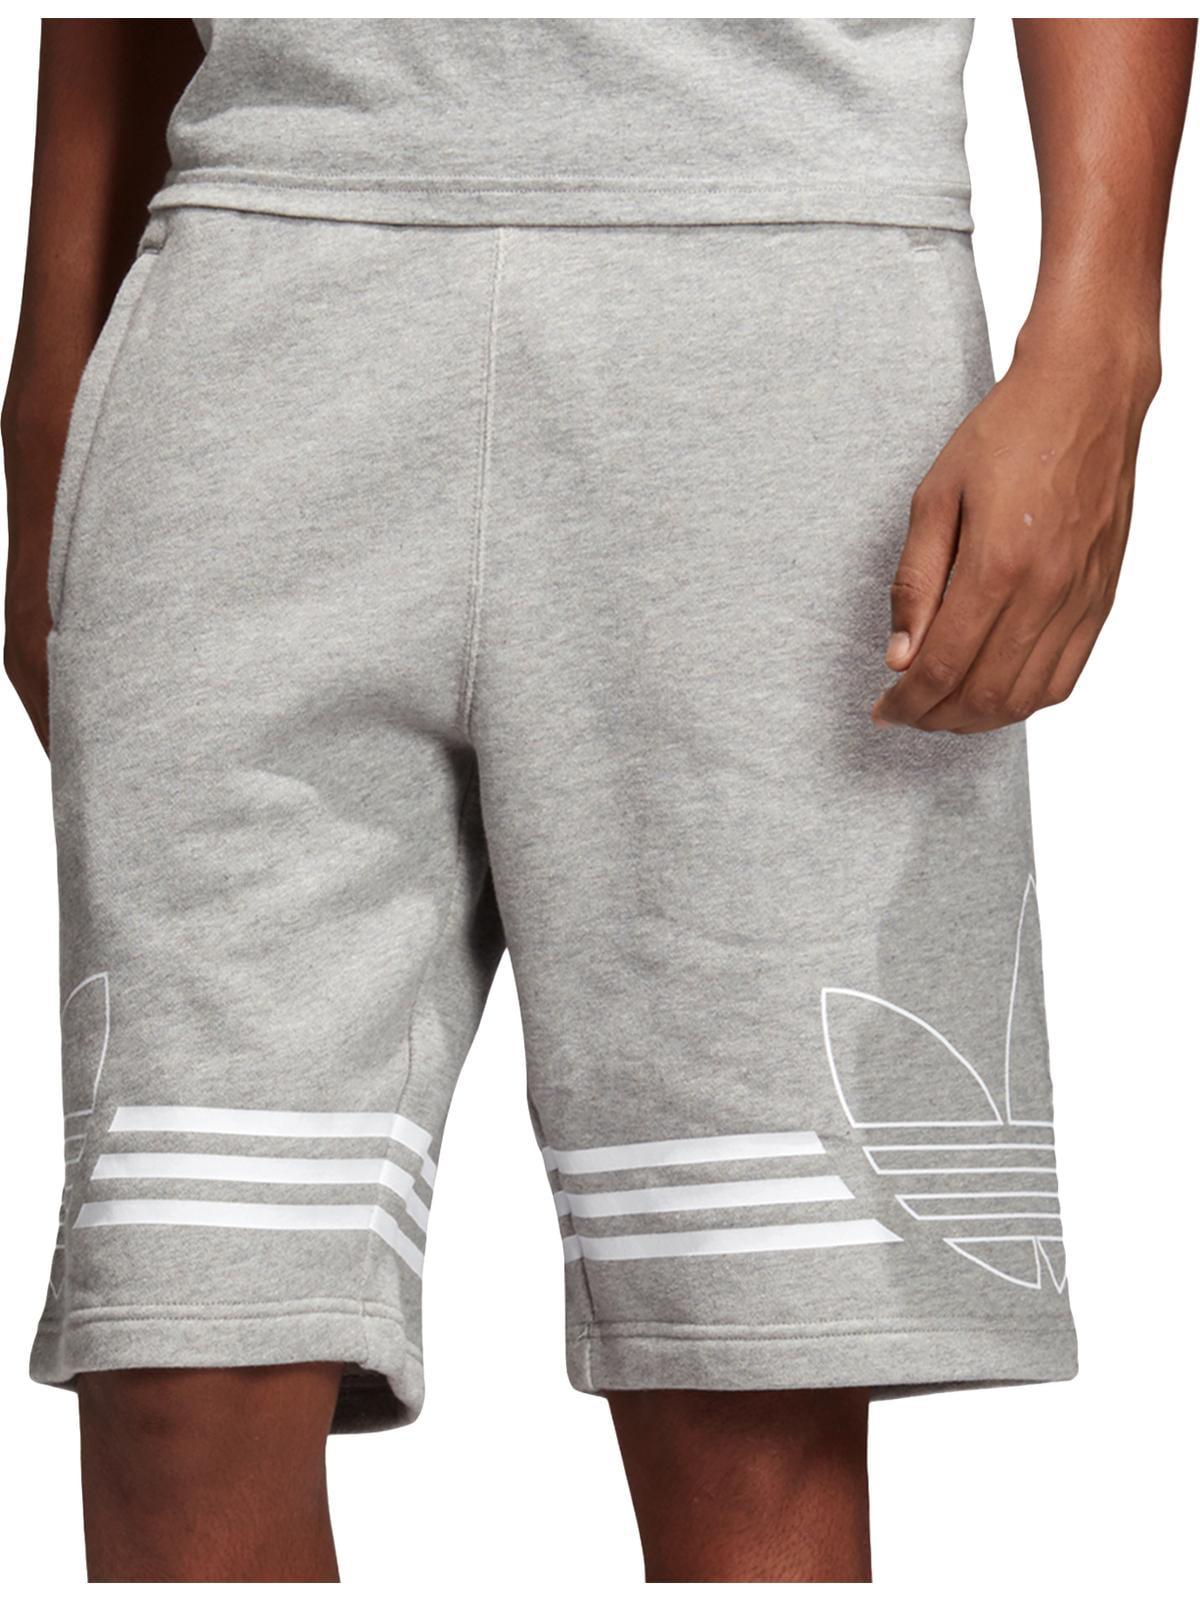 comfy adidas shorts